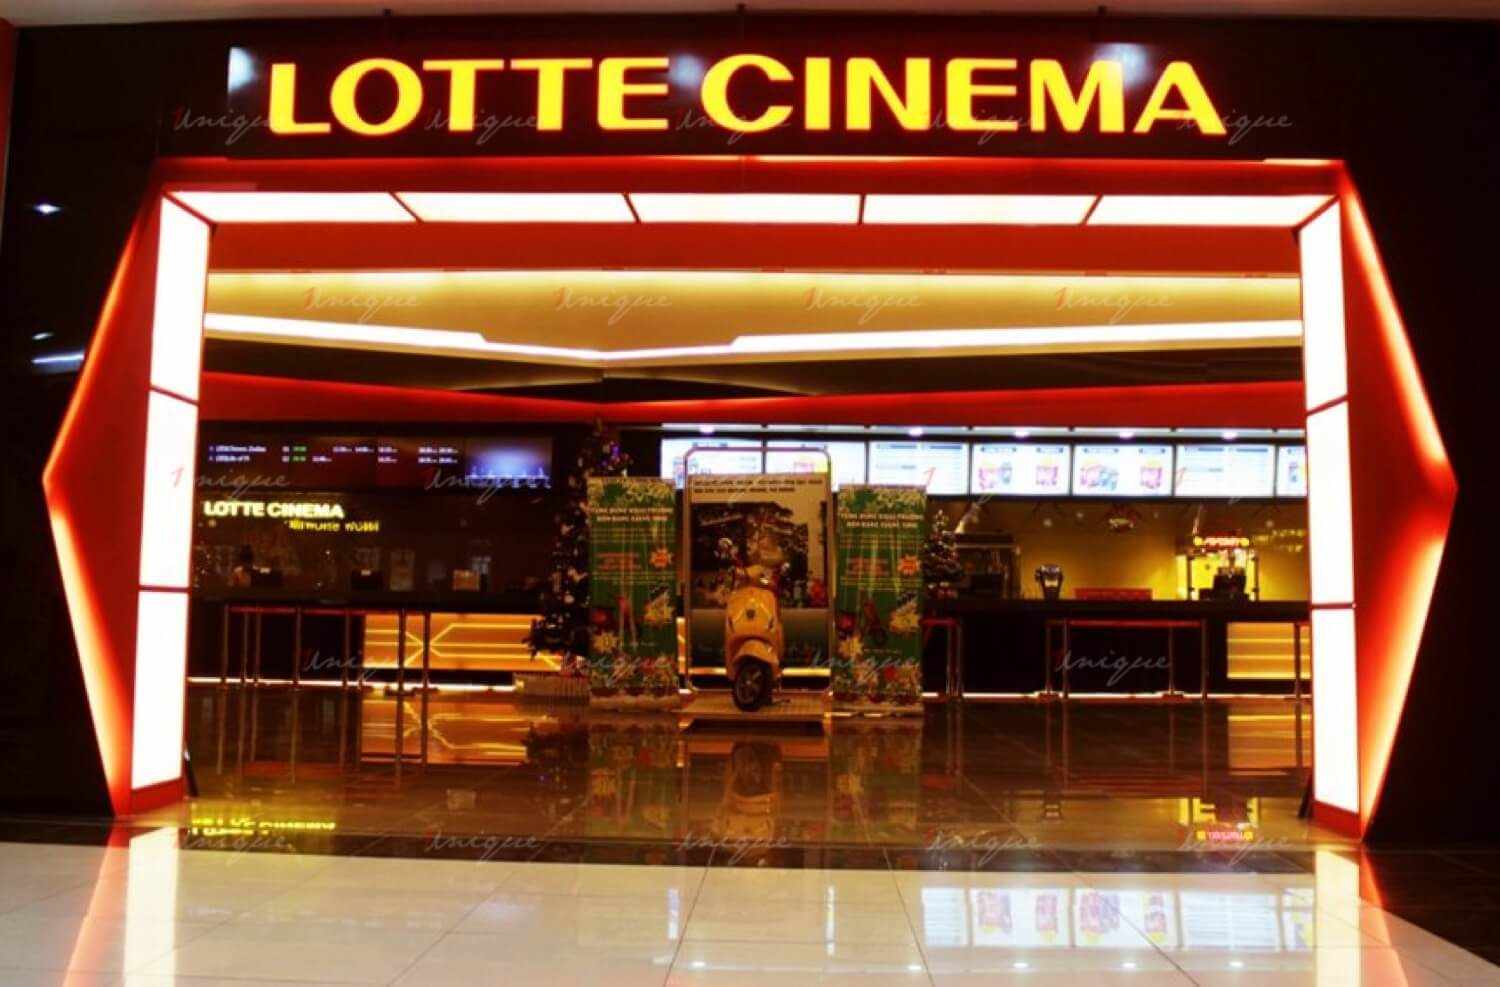 Lotte Cinema Nam Định  CẬP NHẬT LỊCH CHIẾU PHIM NGÀY 270929092022  NHÉ MỌI NGƯỜI  Đón xem rất nhiều phim hay và hấp dẫn trong tuần này  nhé mọi người 